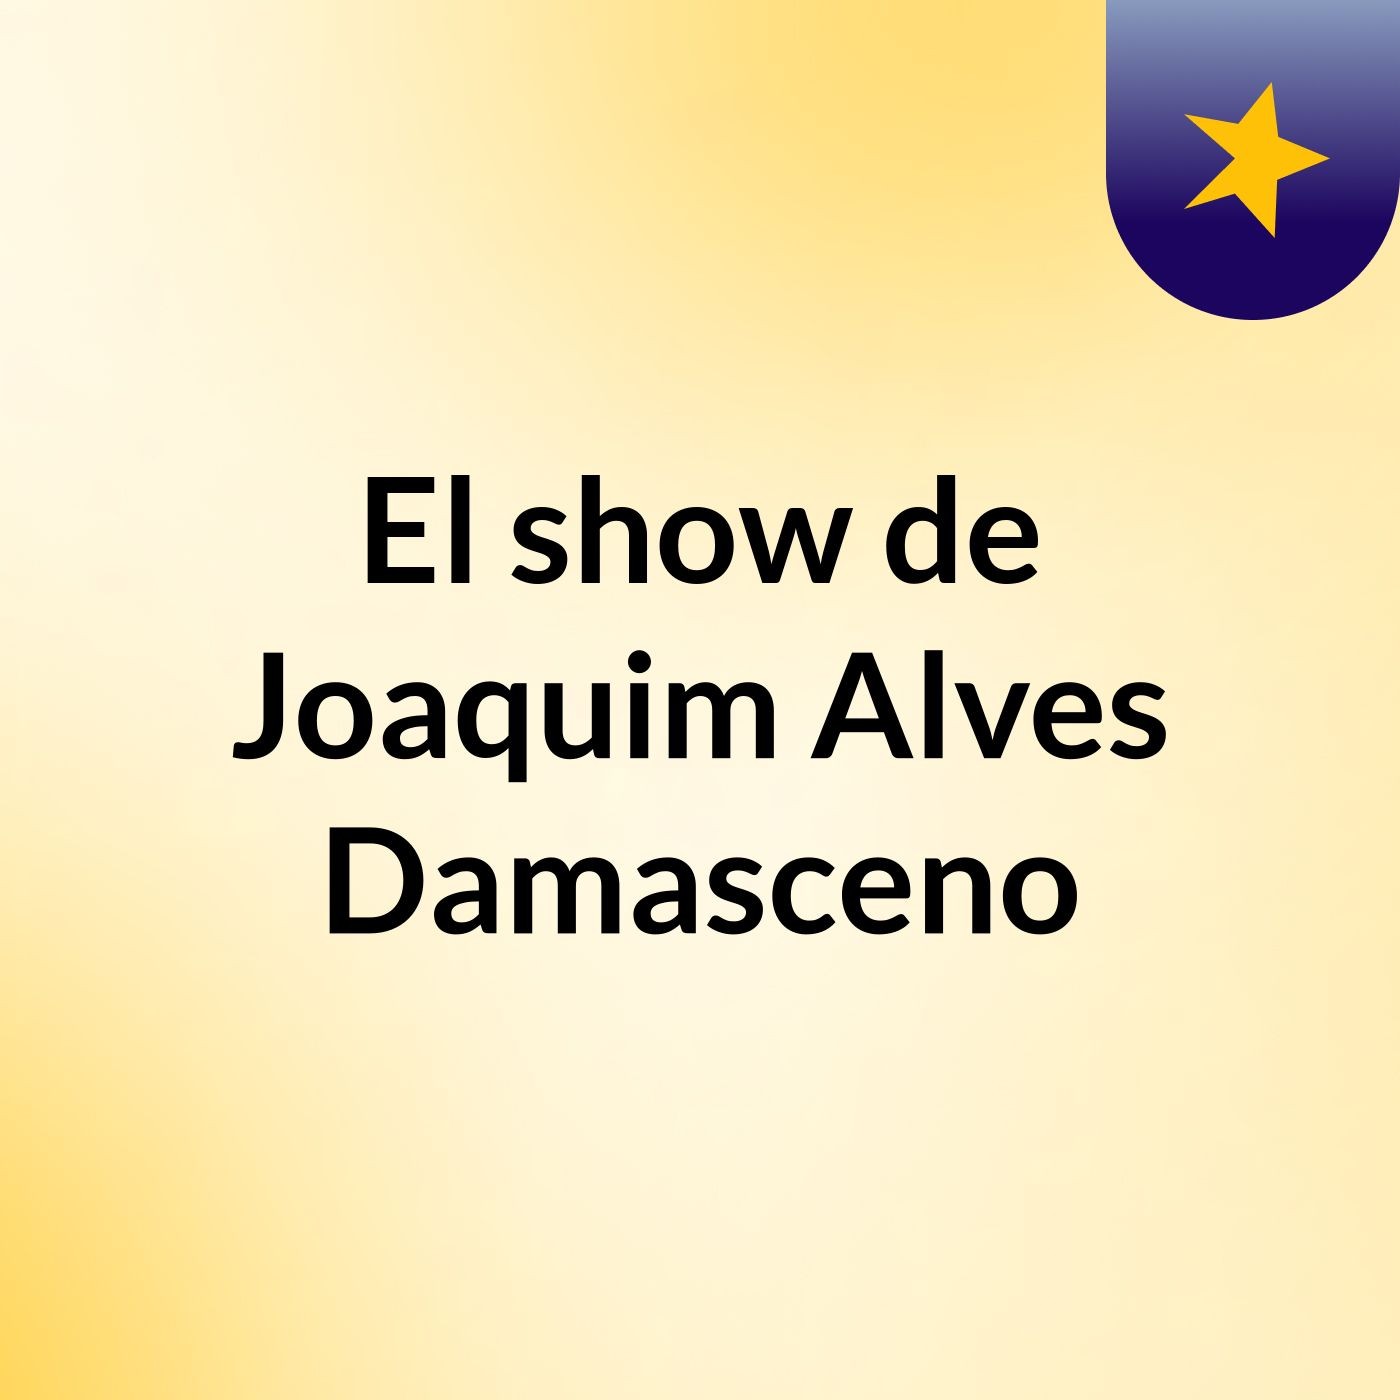 El show de Joaquim Alves Damasceno